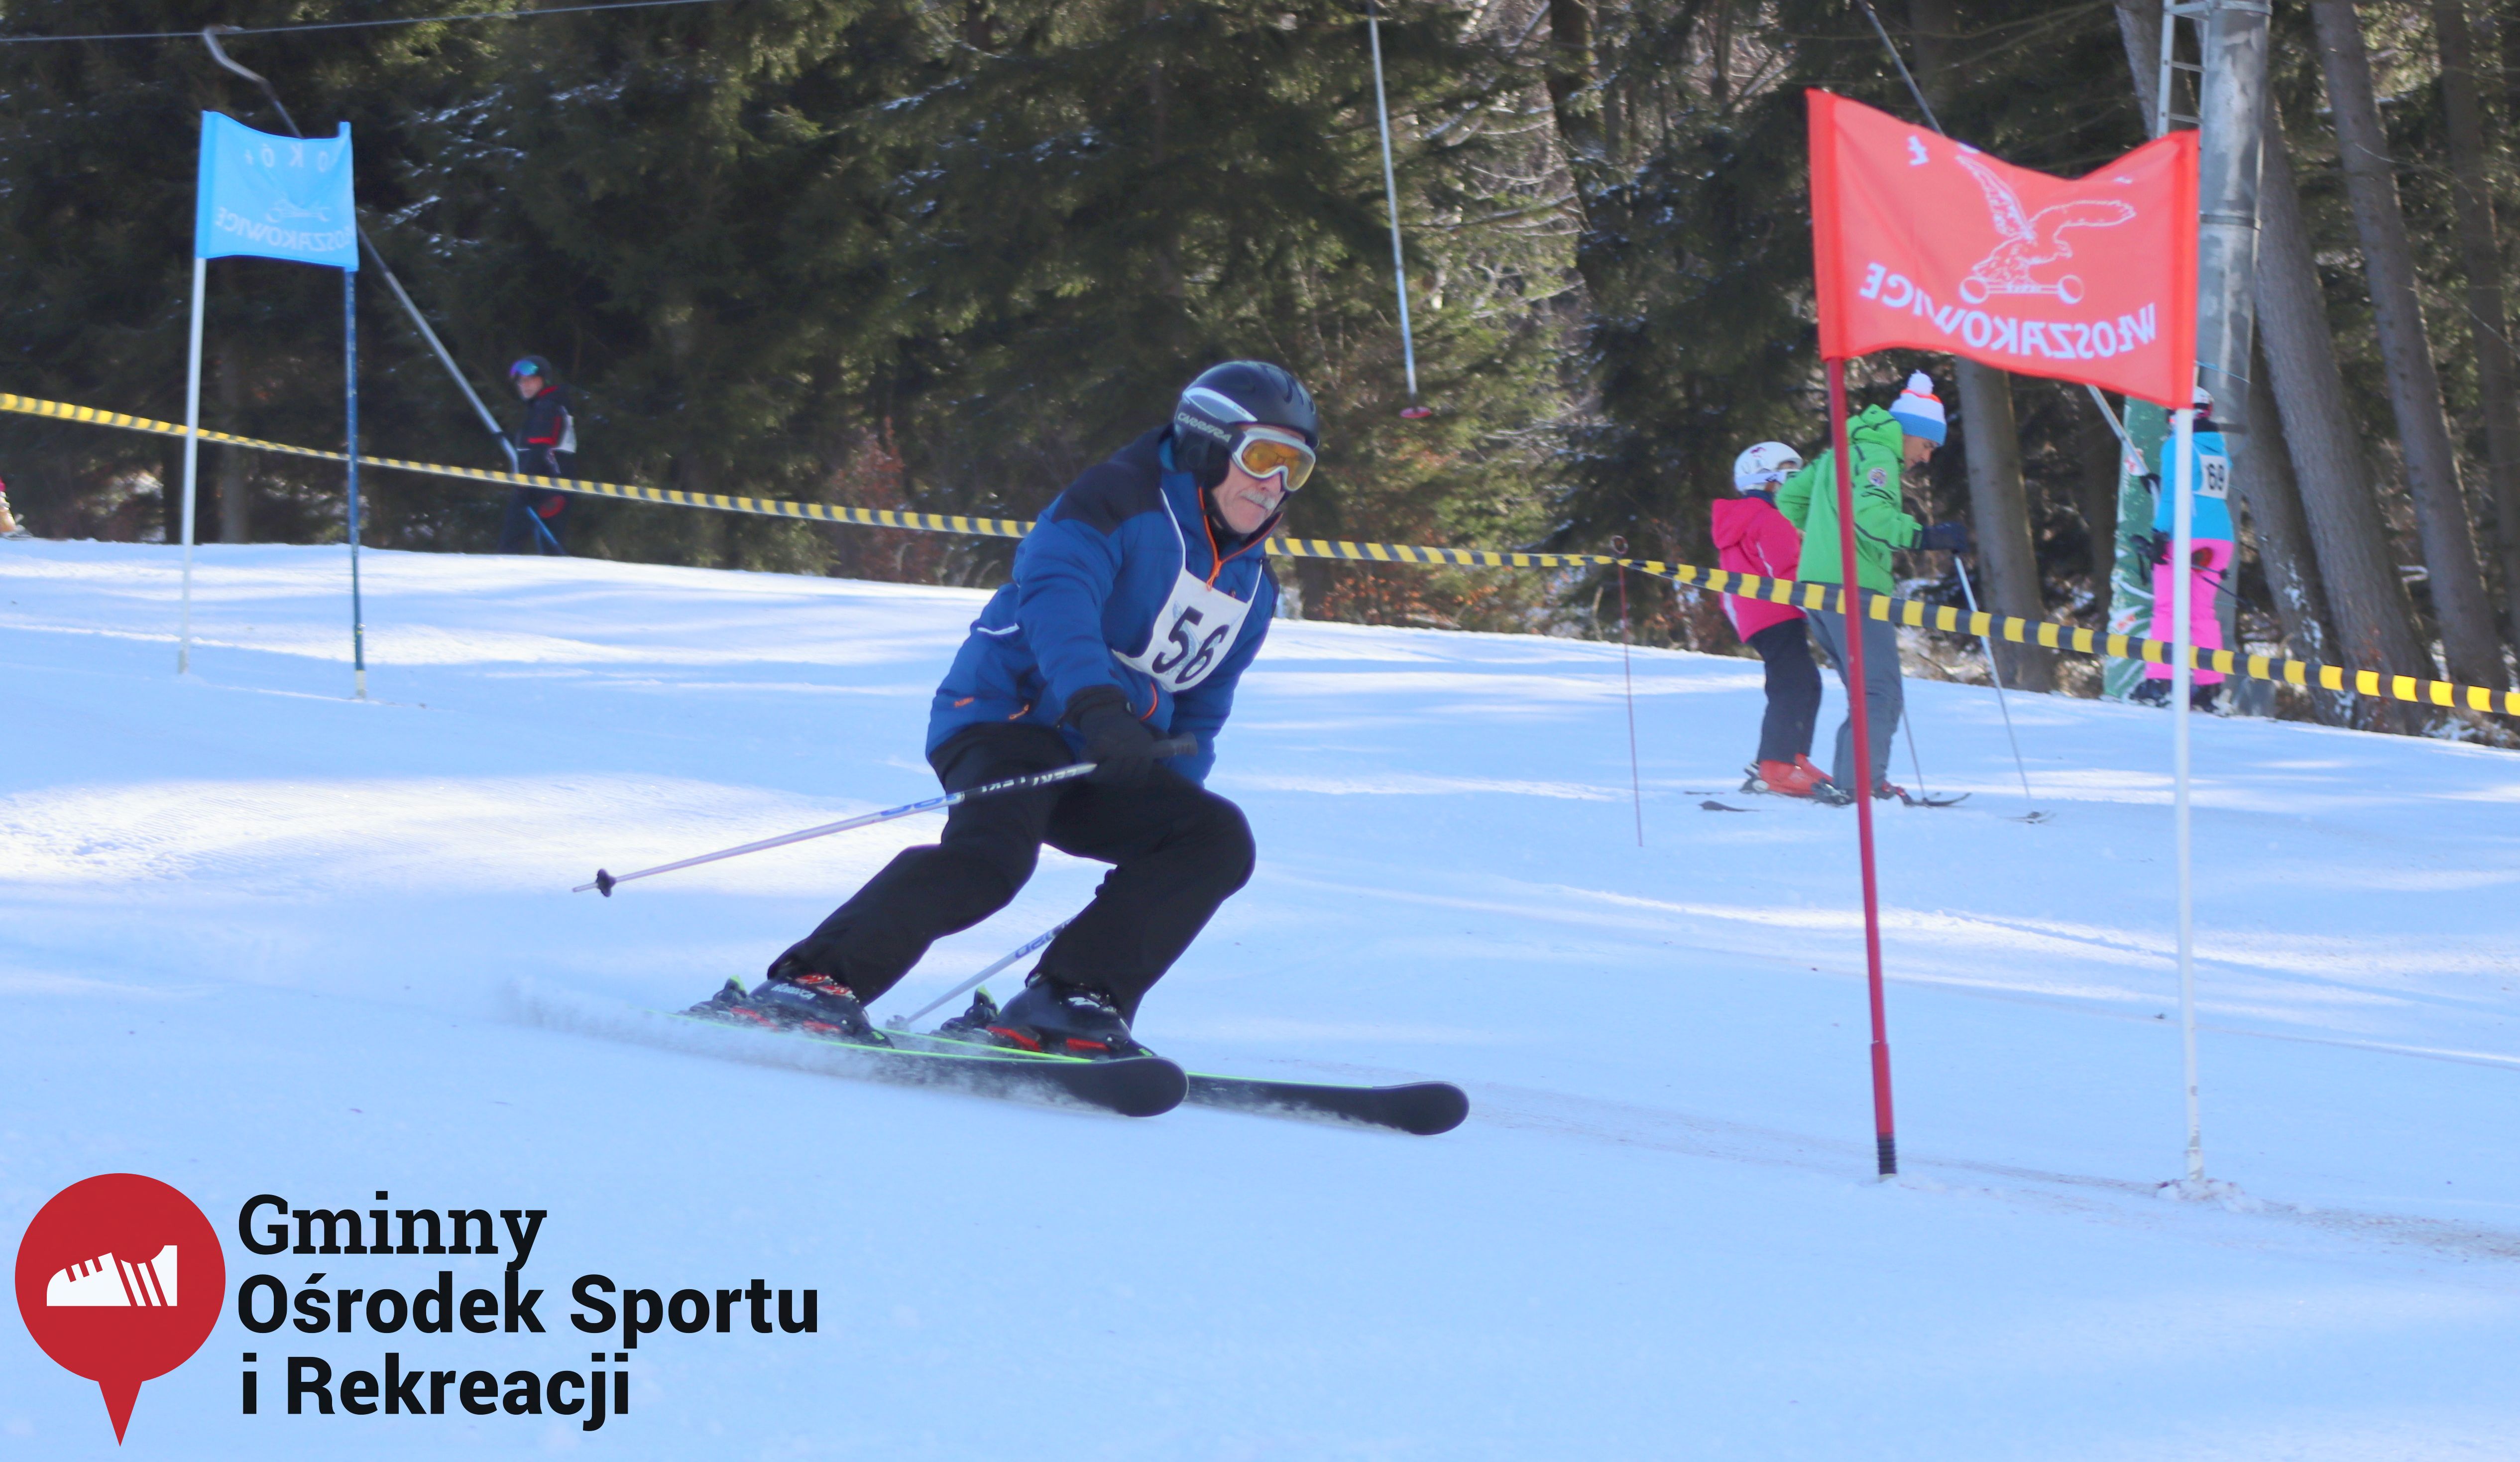 2022.02.12 - 18. Mistrzostwa Gminy Woszakowice w narciarstwie024.jpg - 1,01 MB